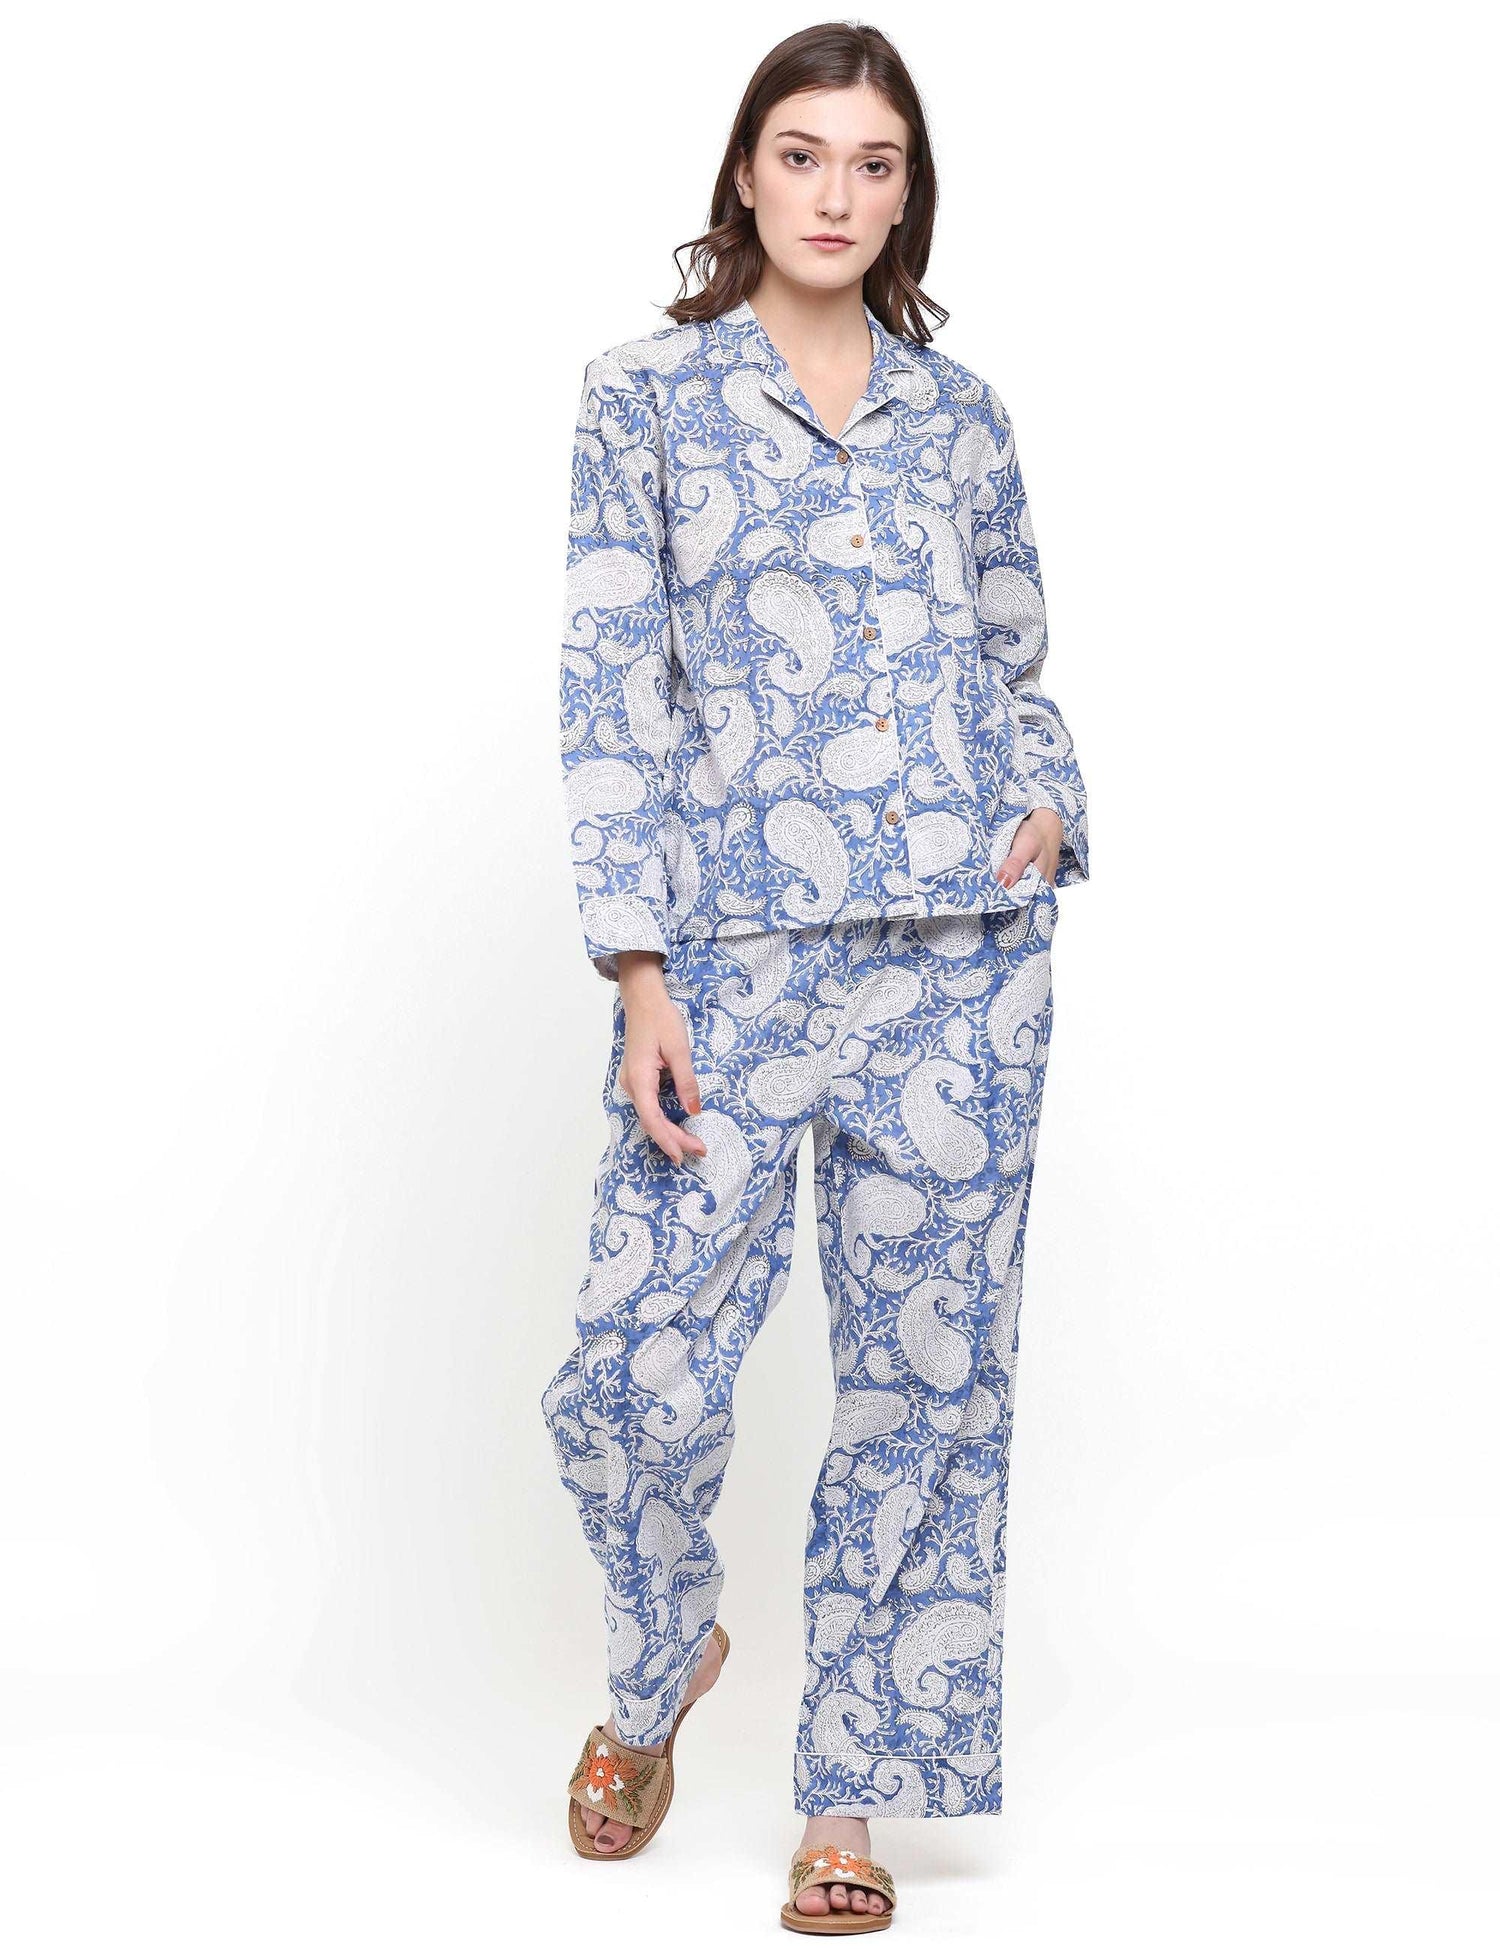 Calico Pajamas